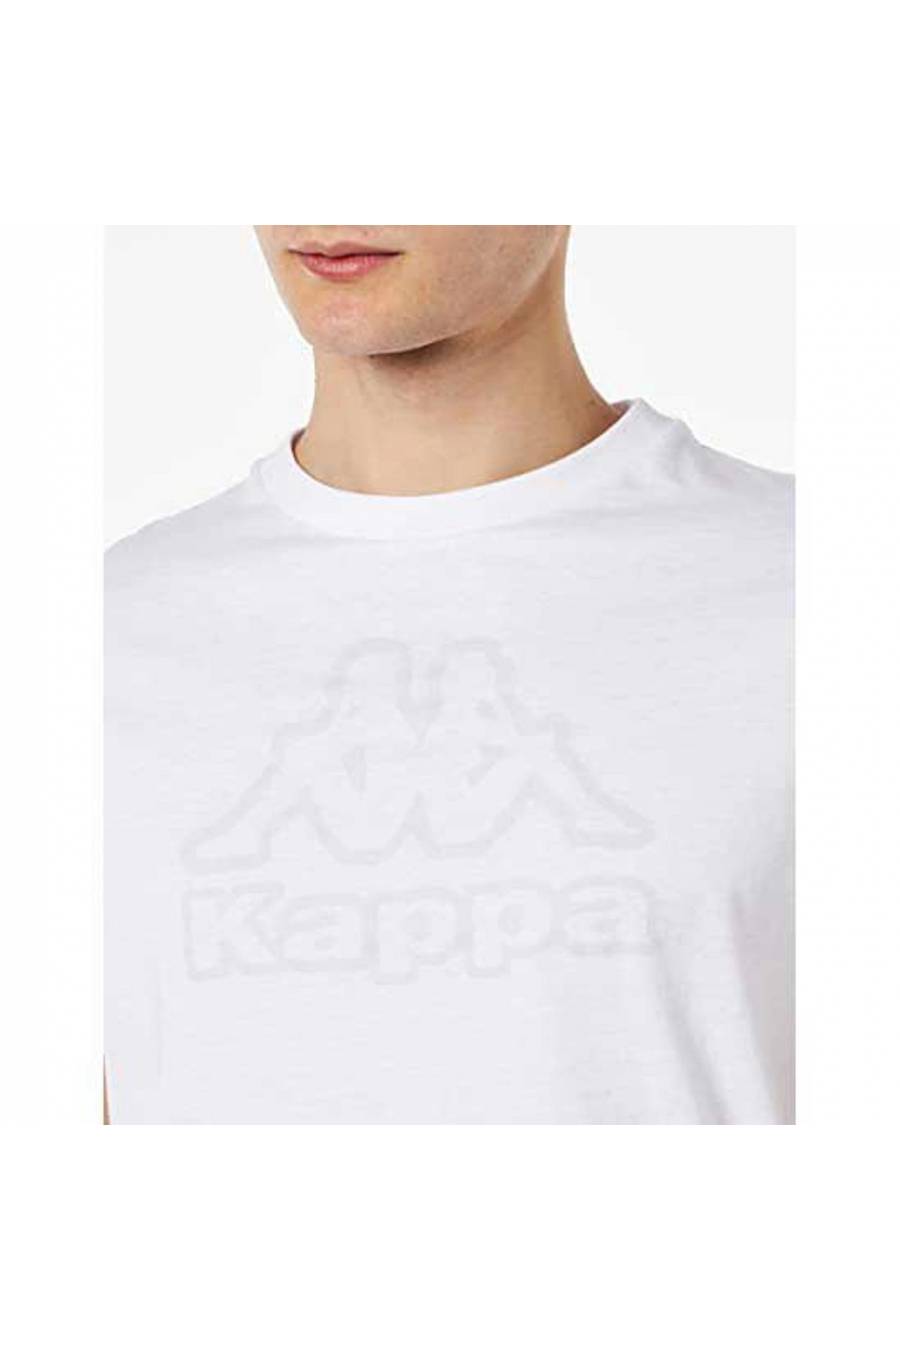 Camiseta Kappa Cremy 331G3CW-001